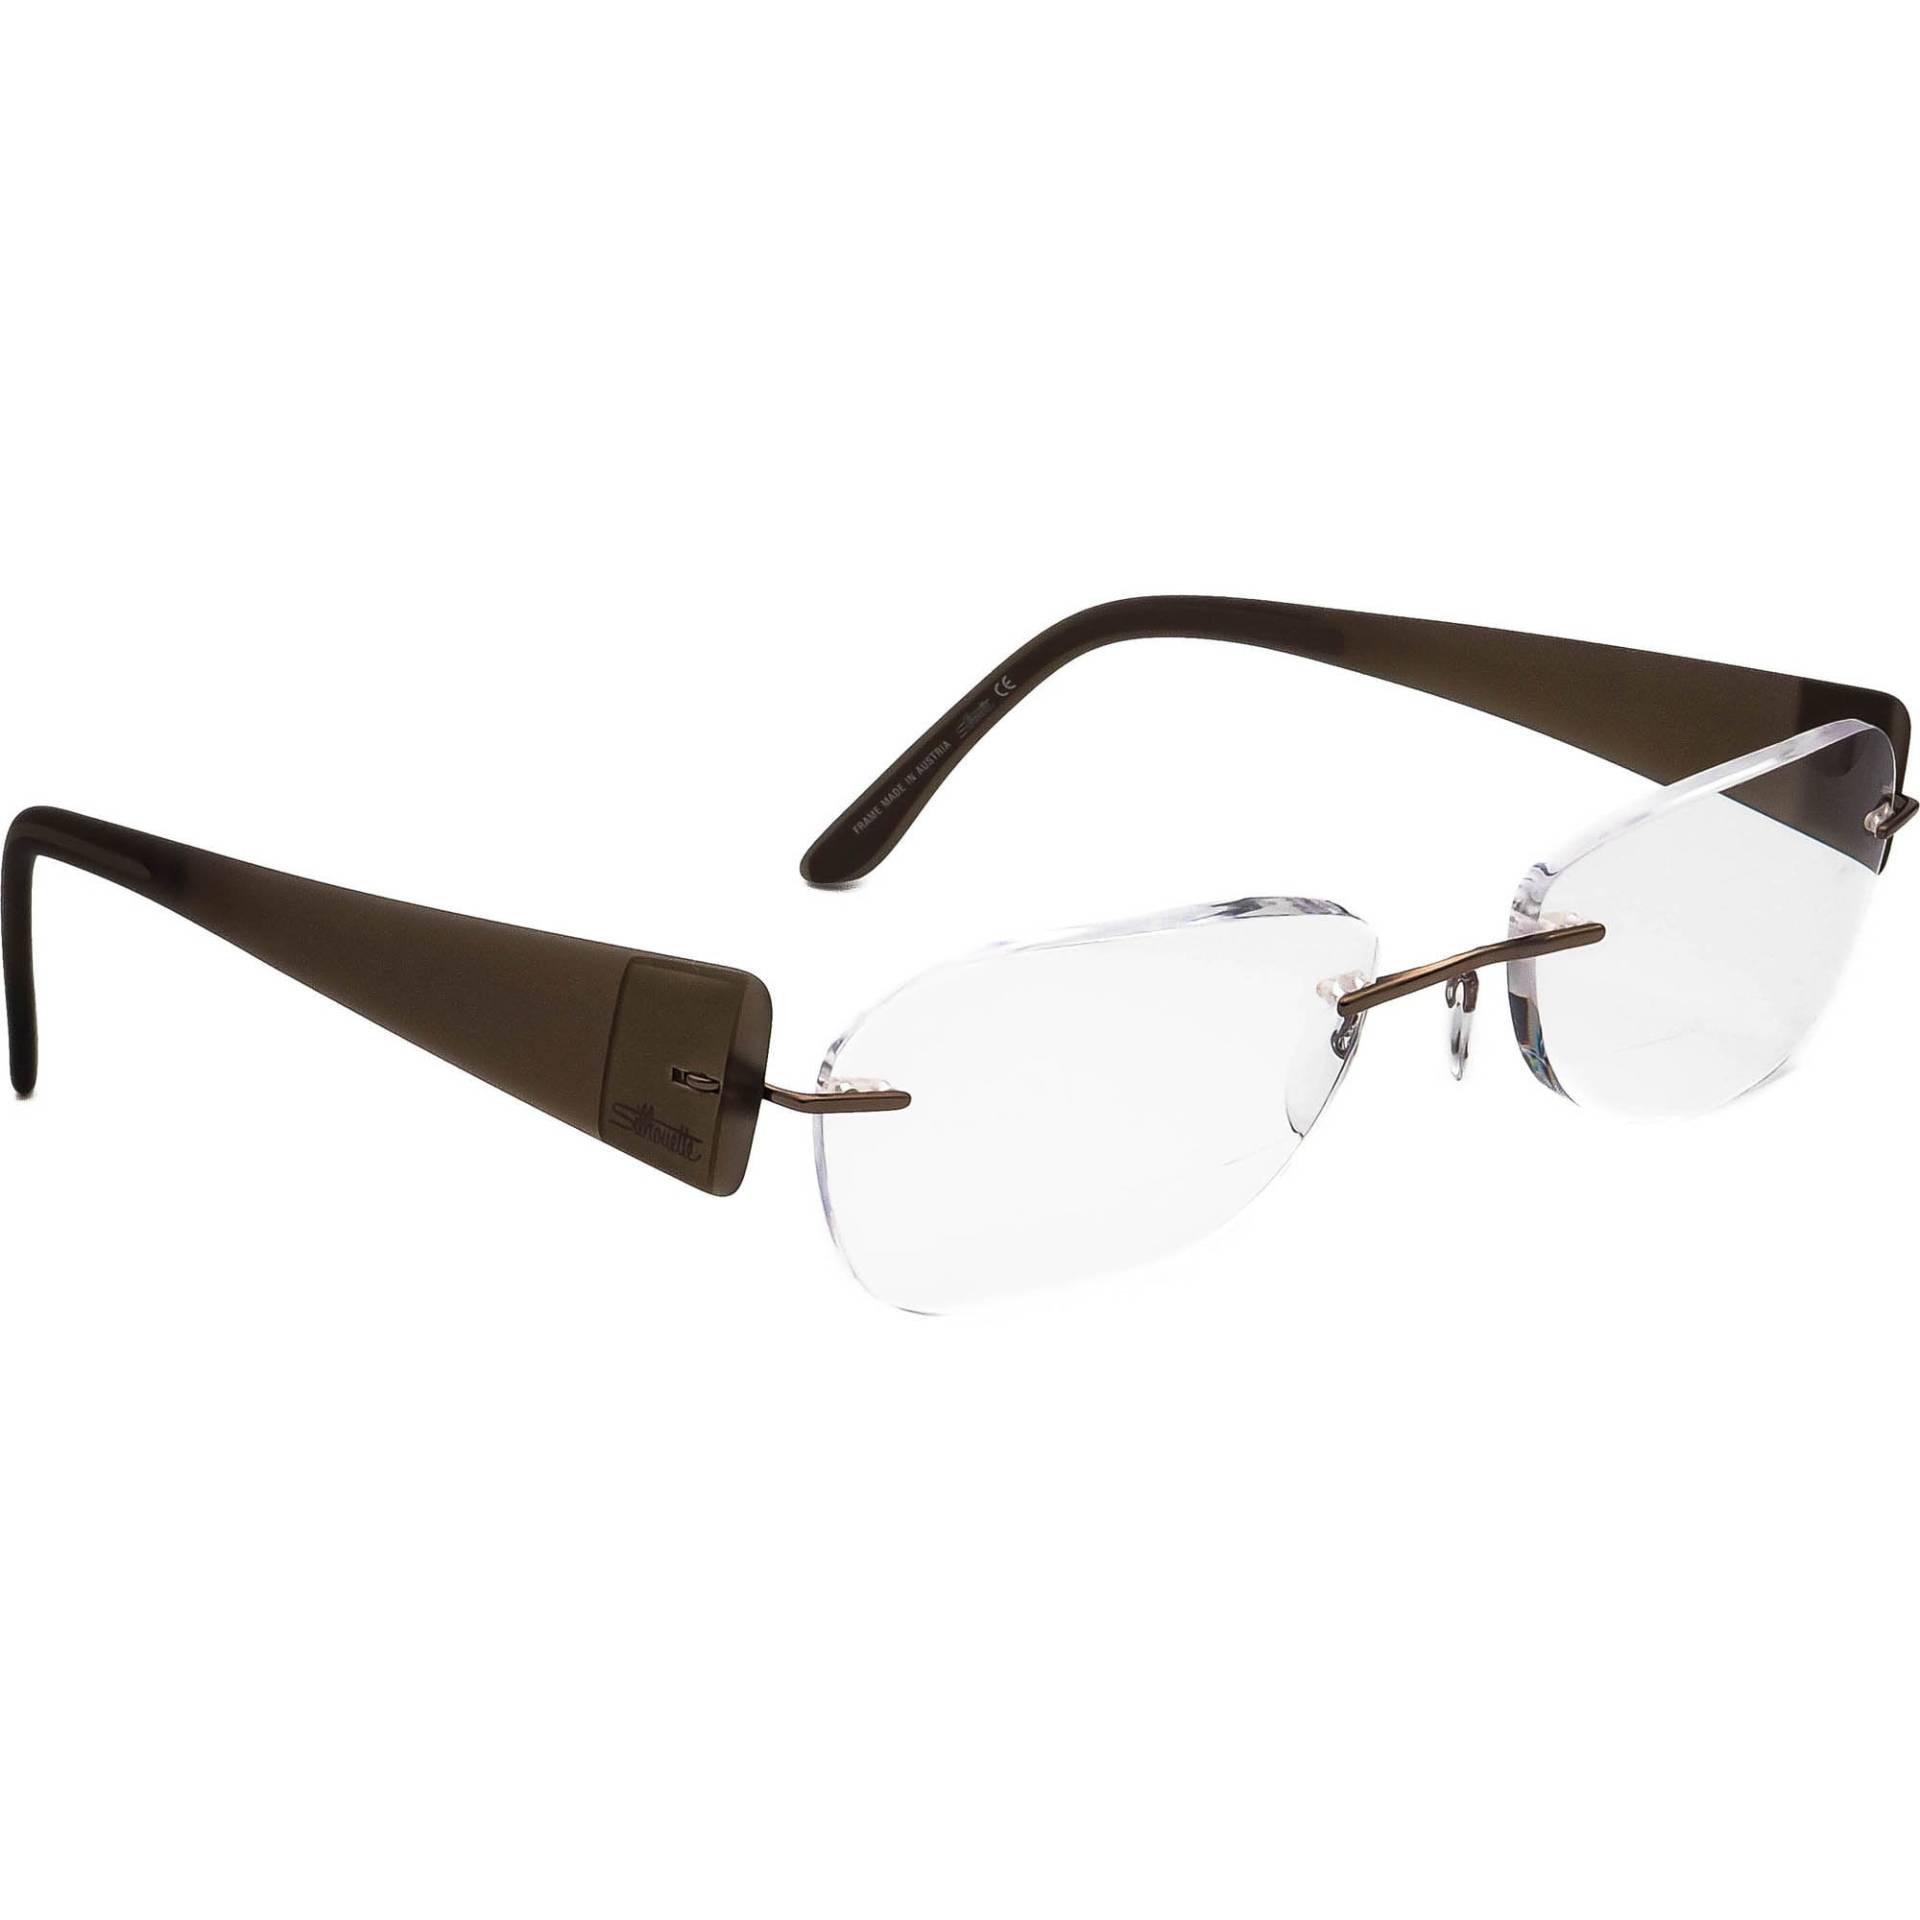 Silhouette Brille 7599 40 6052 Braun Randlos Rahmen Österreich 56[]19 145 von AfsharOptics